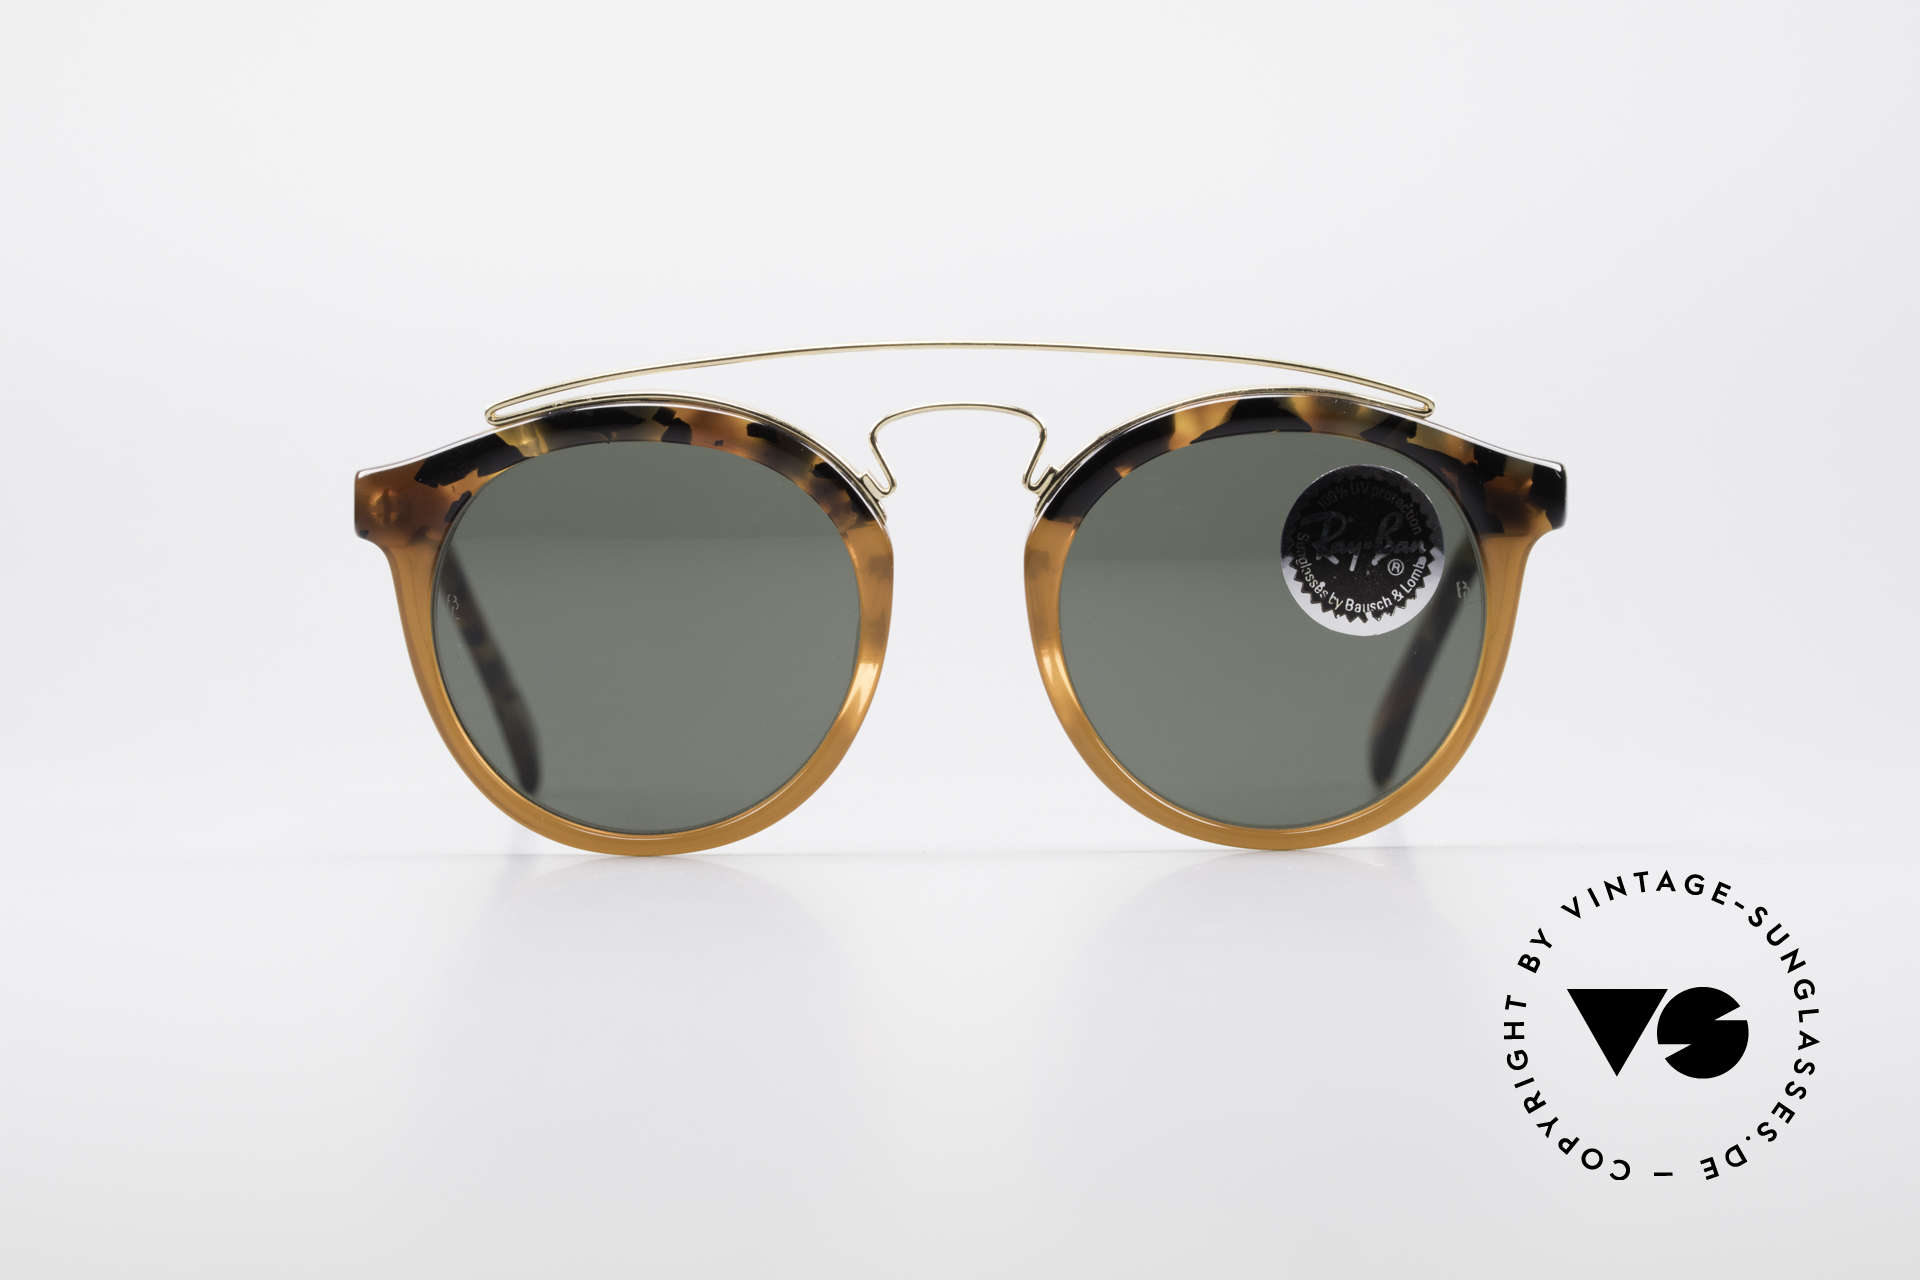 Sunglasses Ray Ban Gatsby Style 4 B&L Bausch Lomb USA